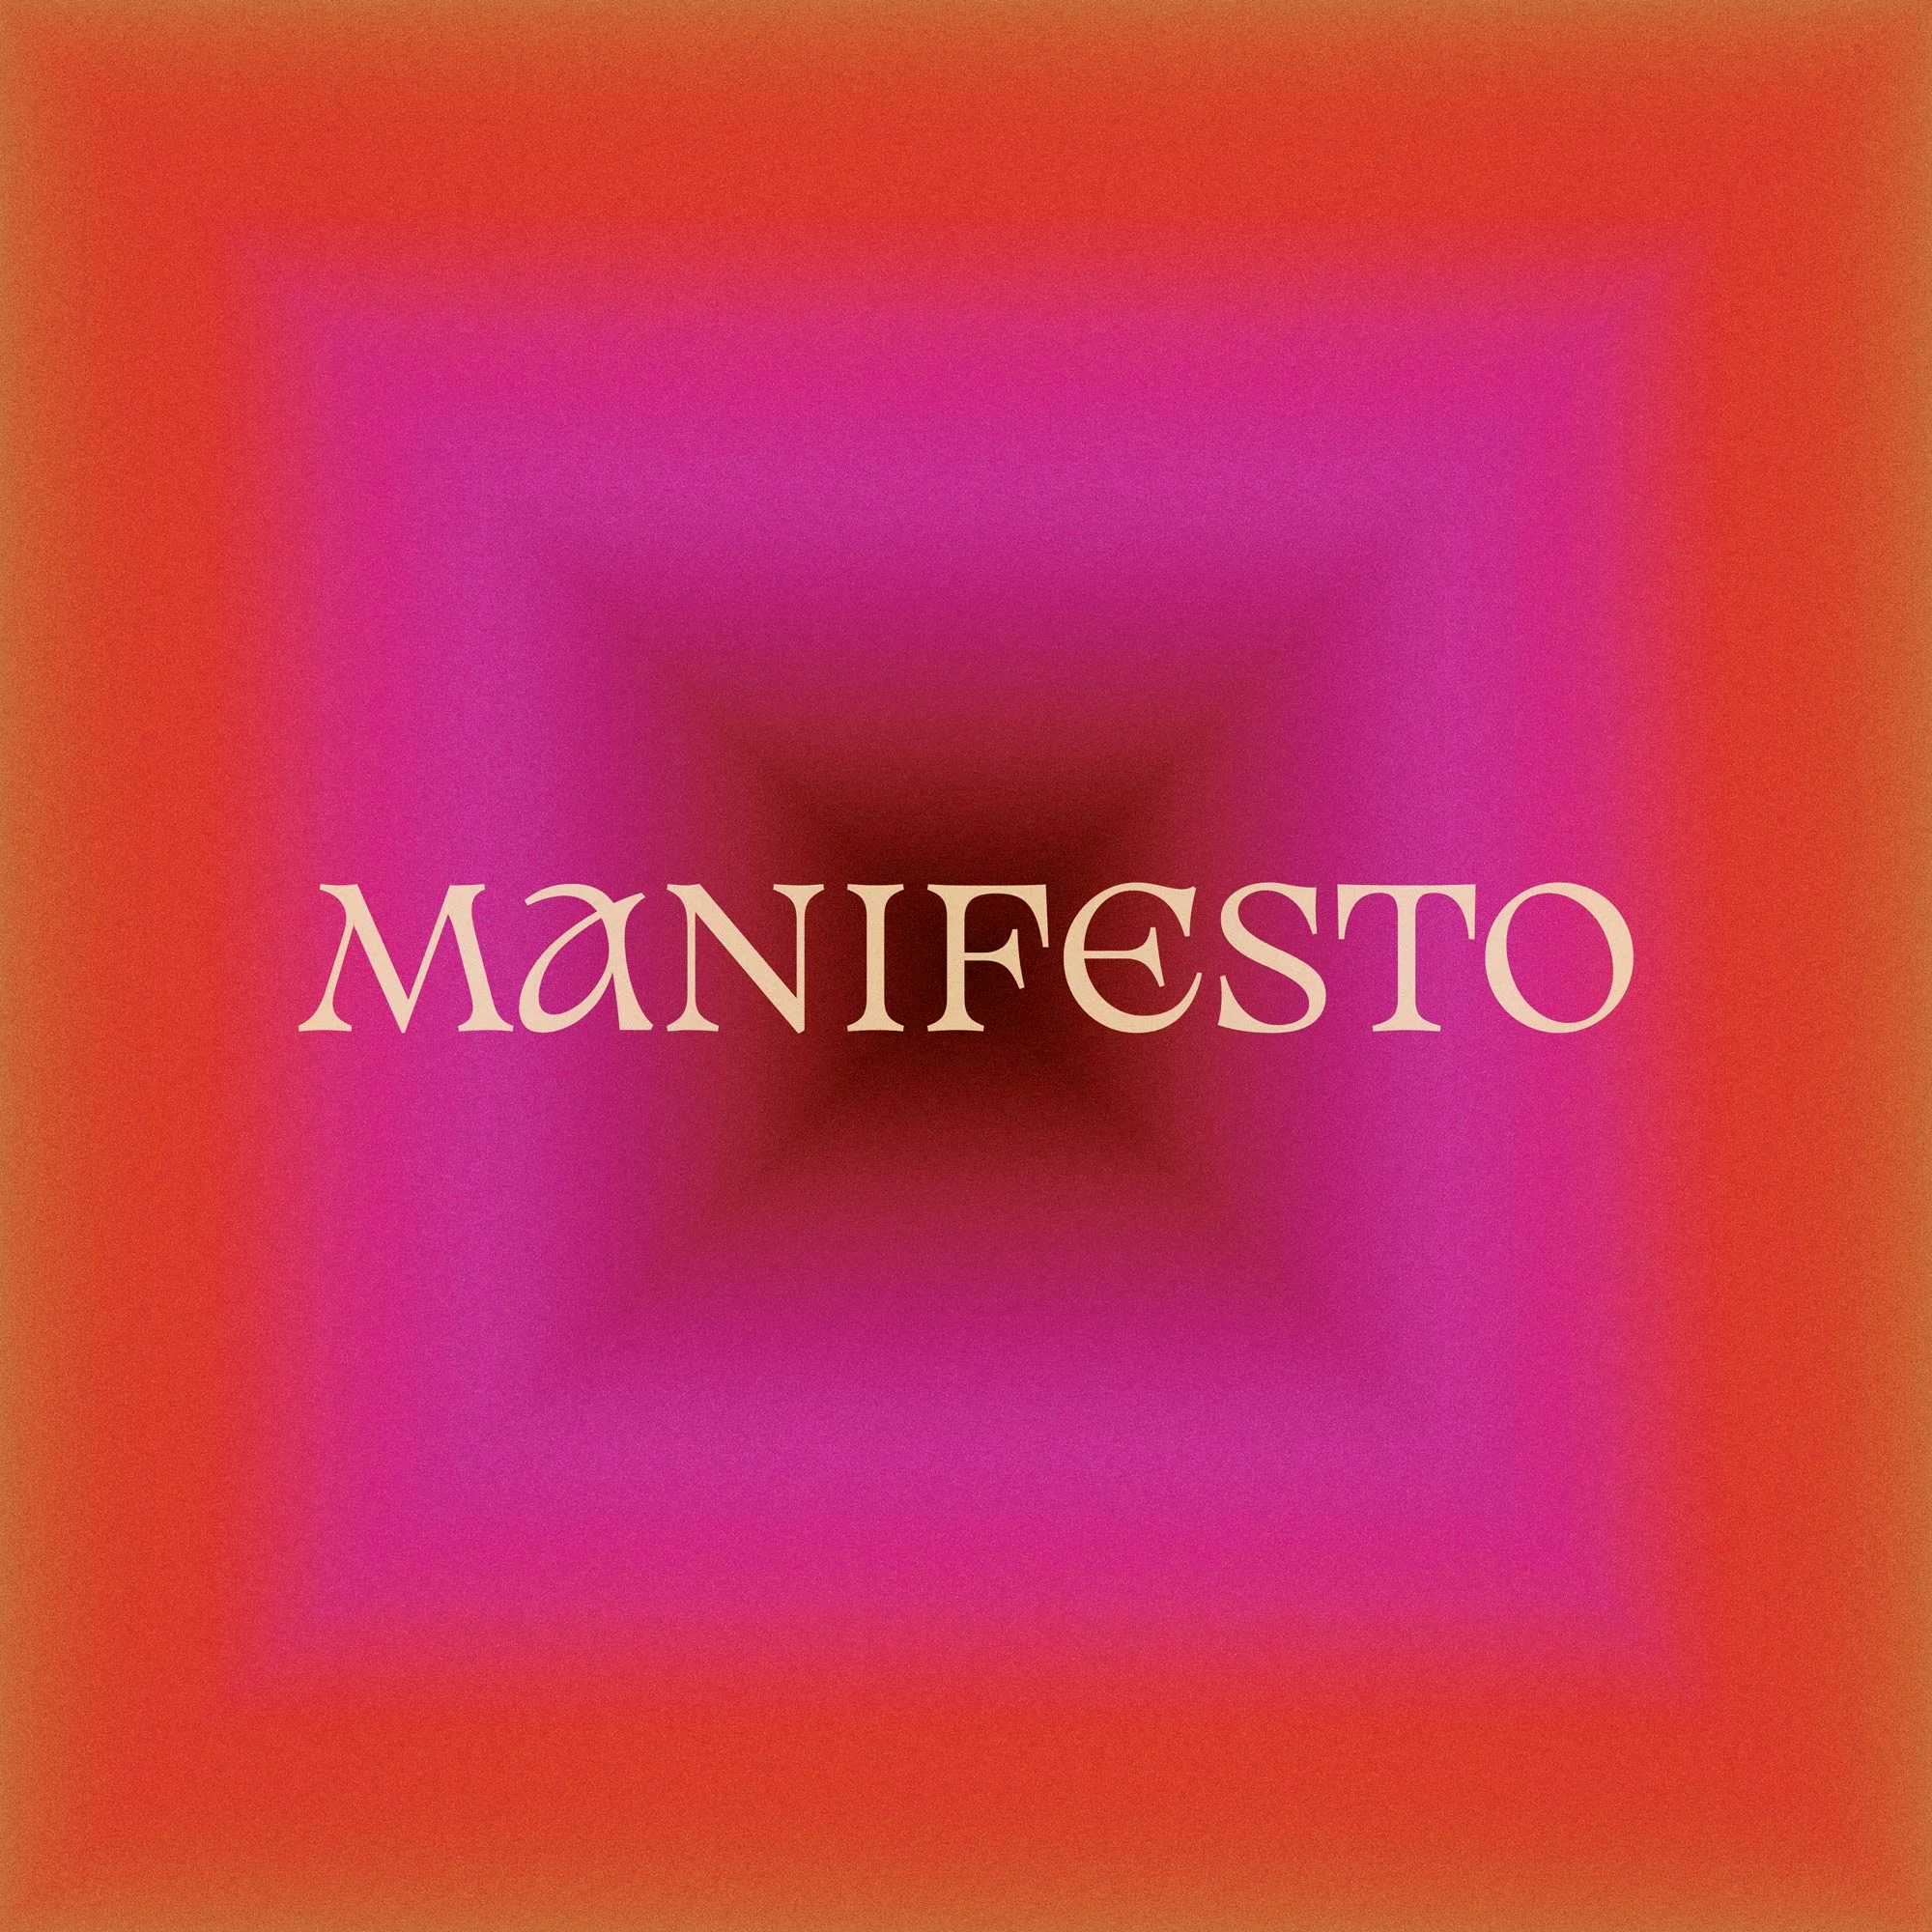 A Manifesto by Marley Dias